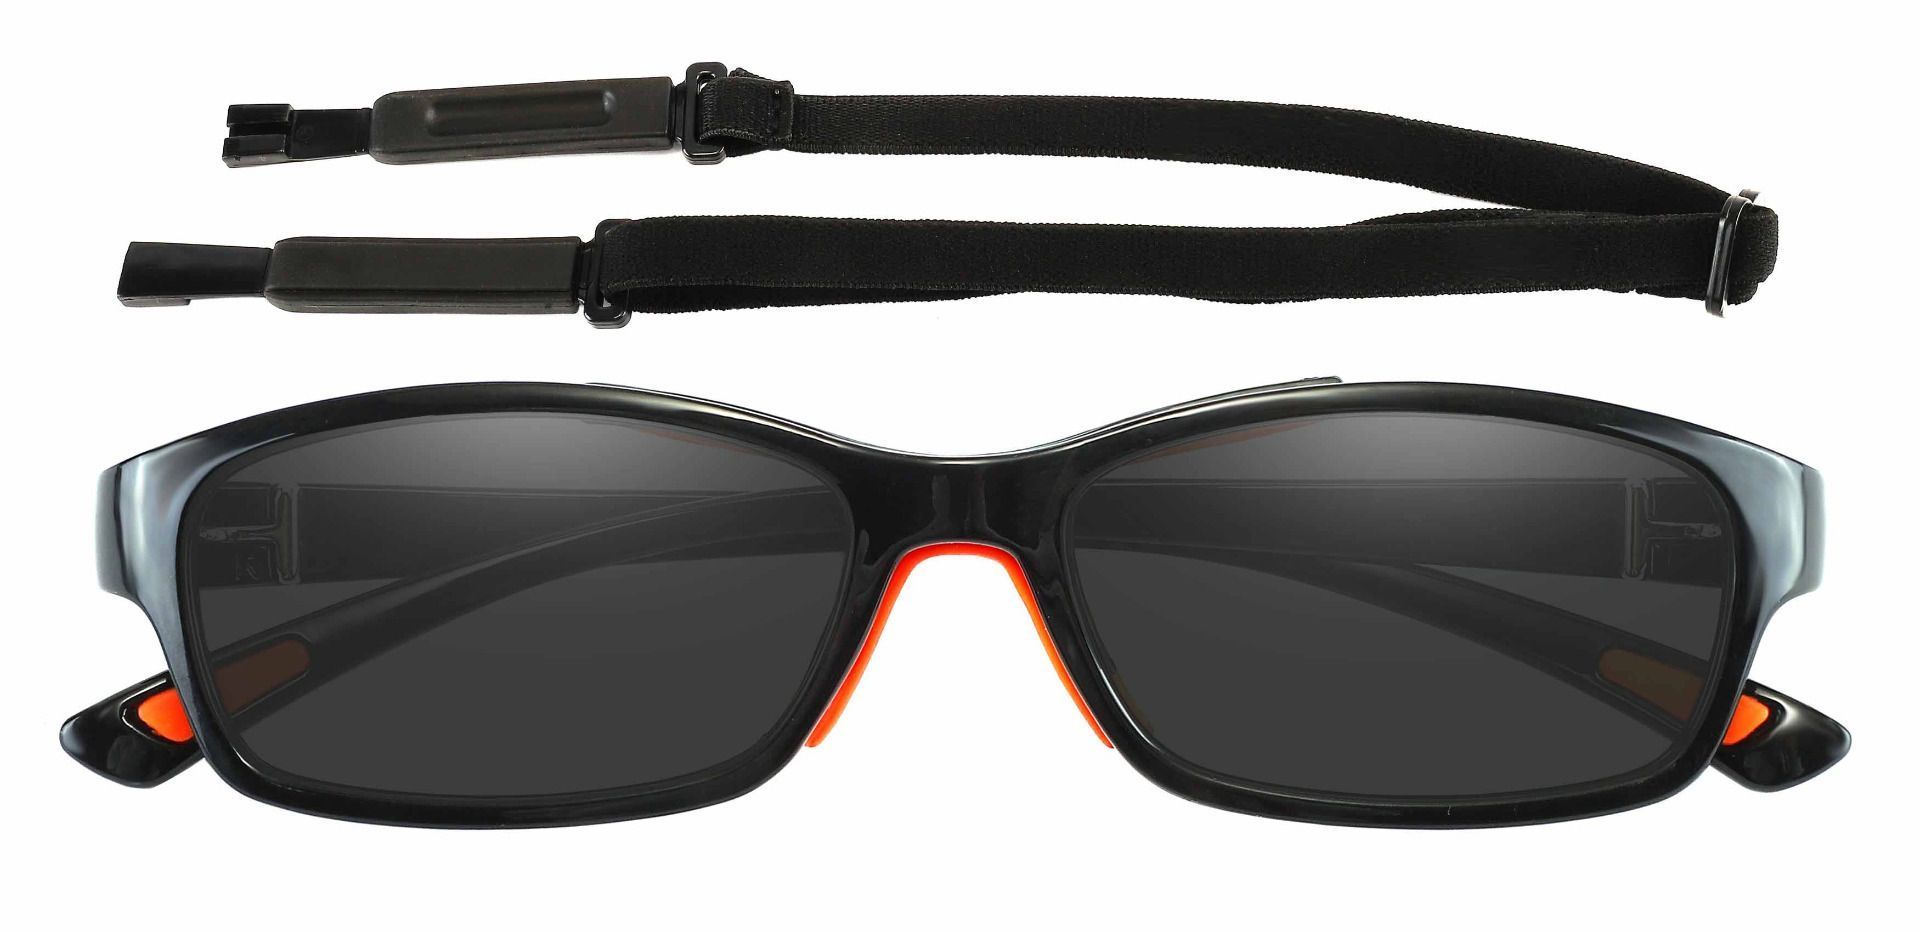 Glynn Rectangle Prescription Sunglasses - Black Frame With Gray Lenses